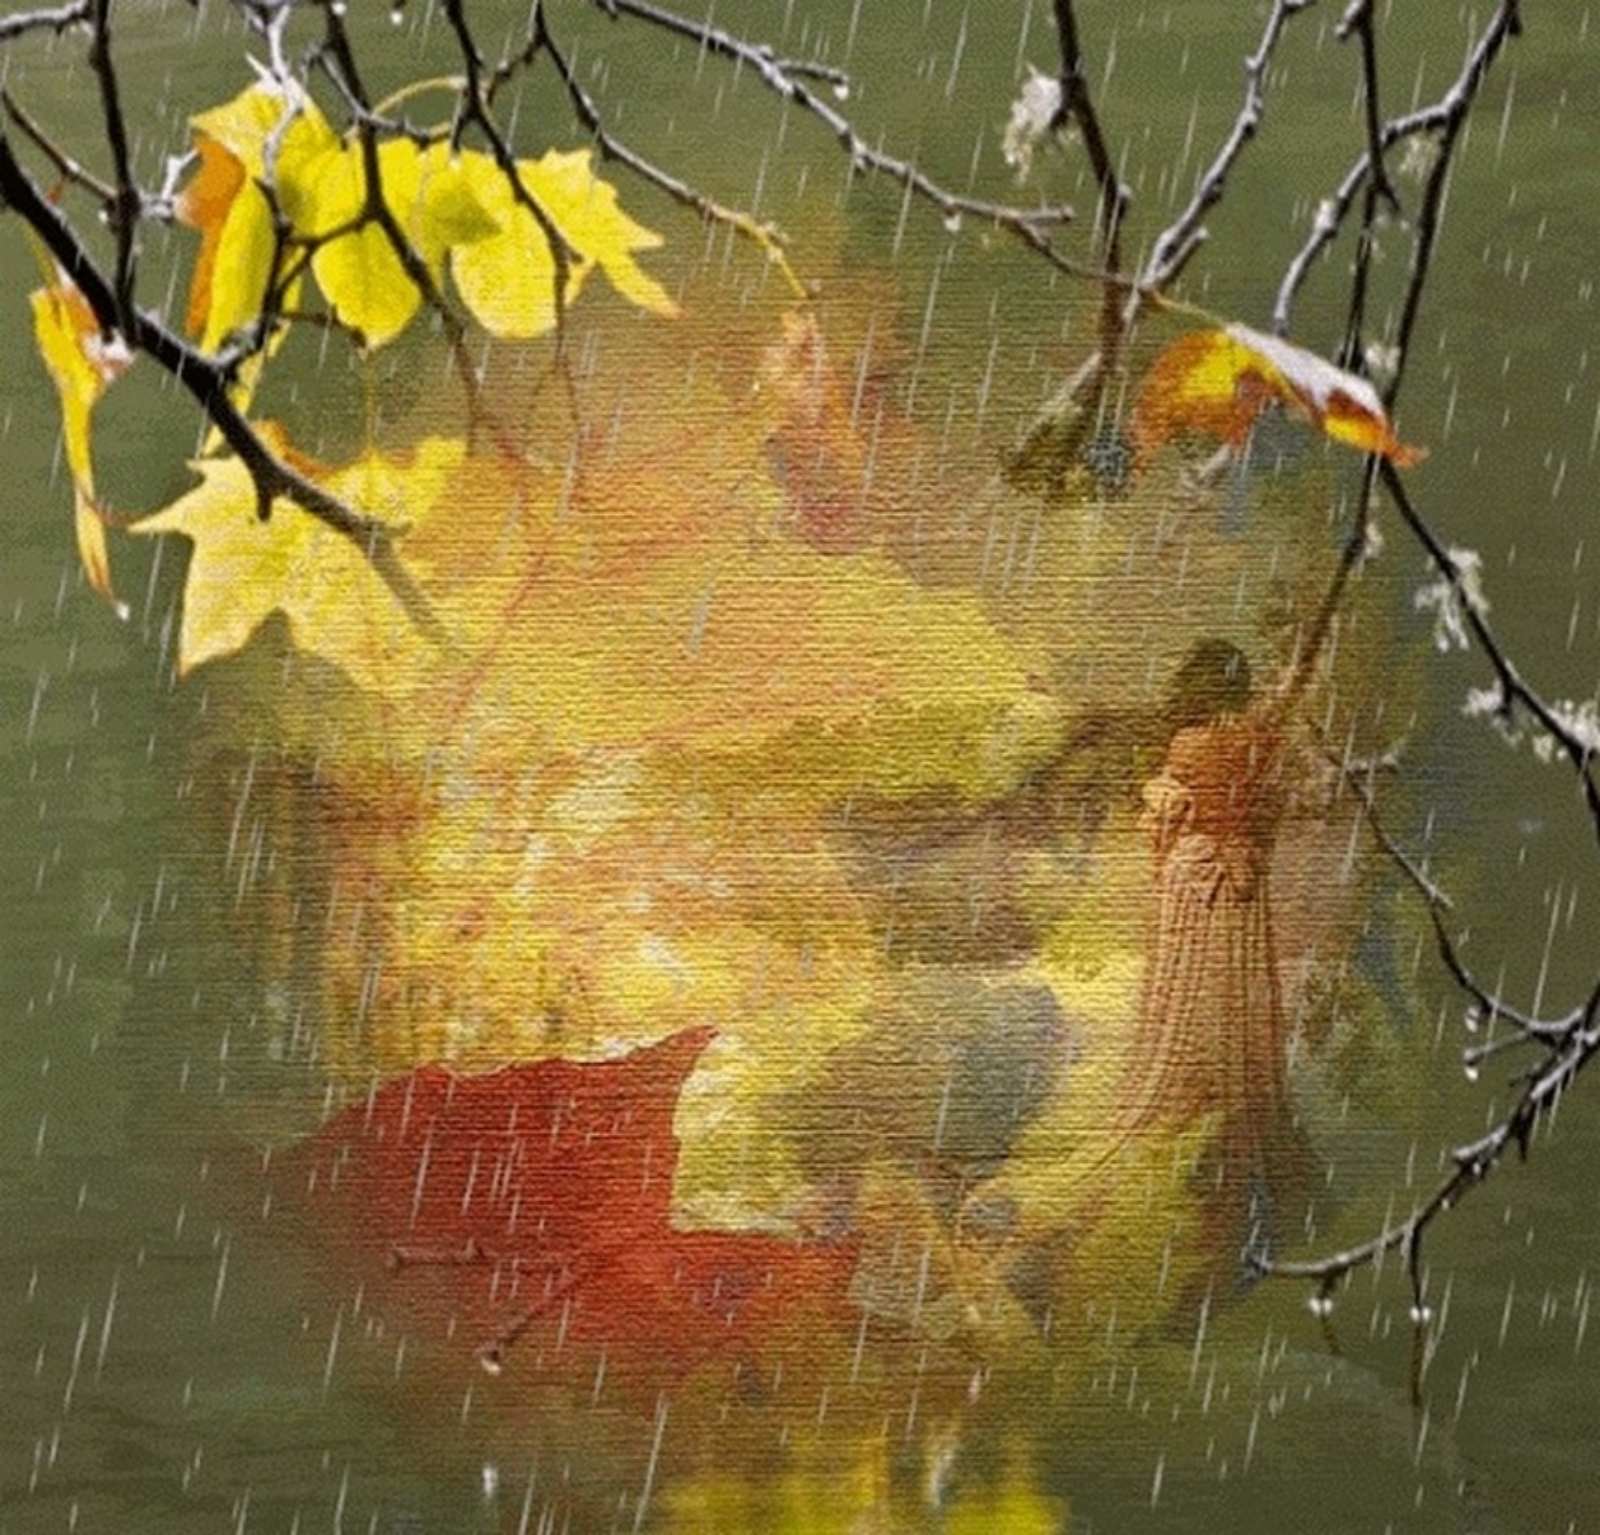 Осенняя музыка дождя. Дождливая осень. Осень дождь. Осень листопад дождь. Осенняя грусть.